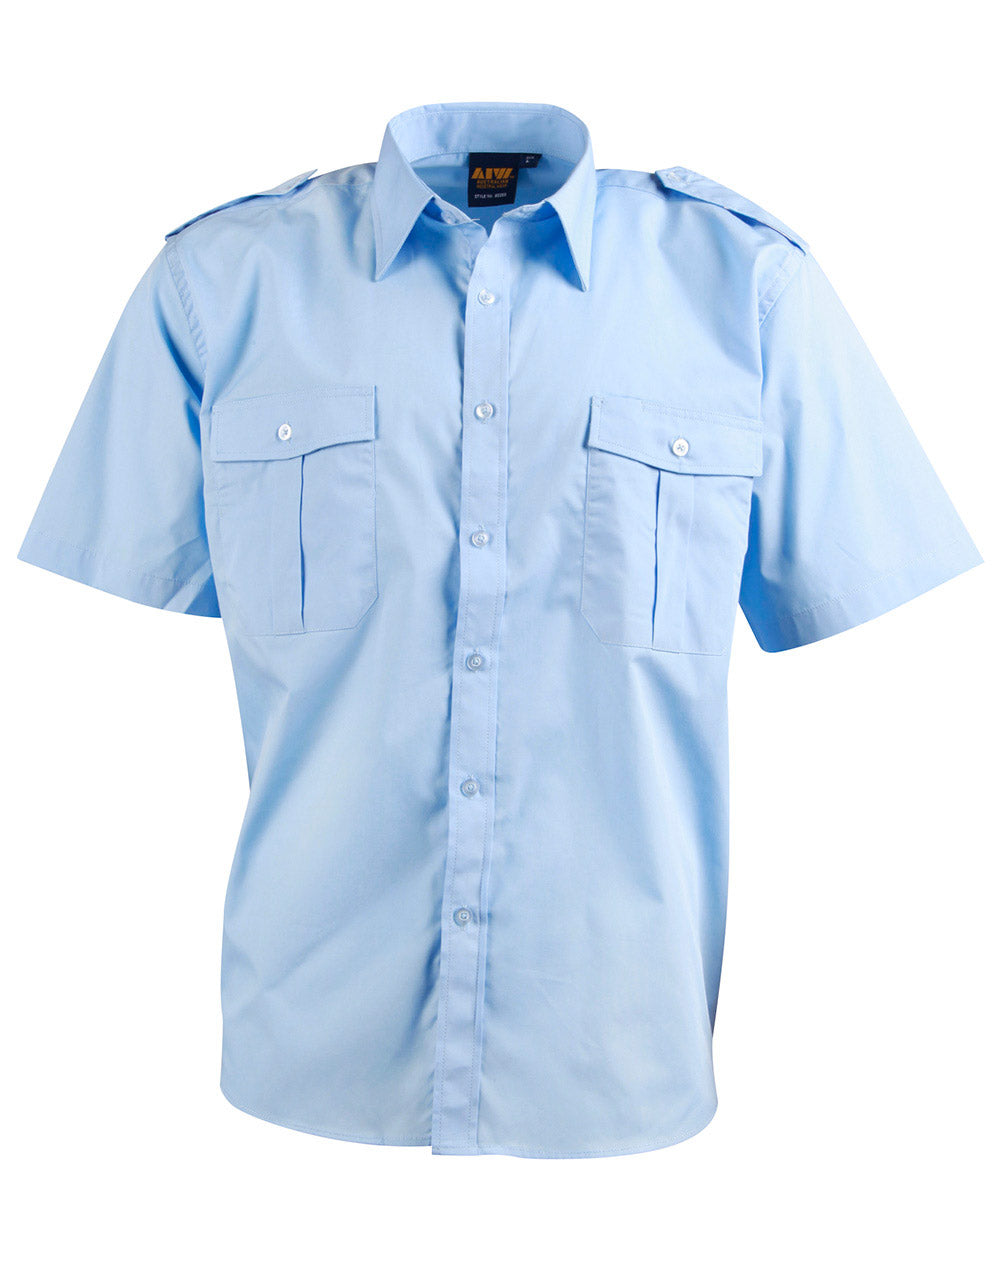 Winning Spirit Men's Short Sleeve Epaulette Shirts (BS06S) – Uniform ...